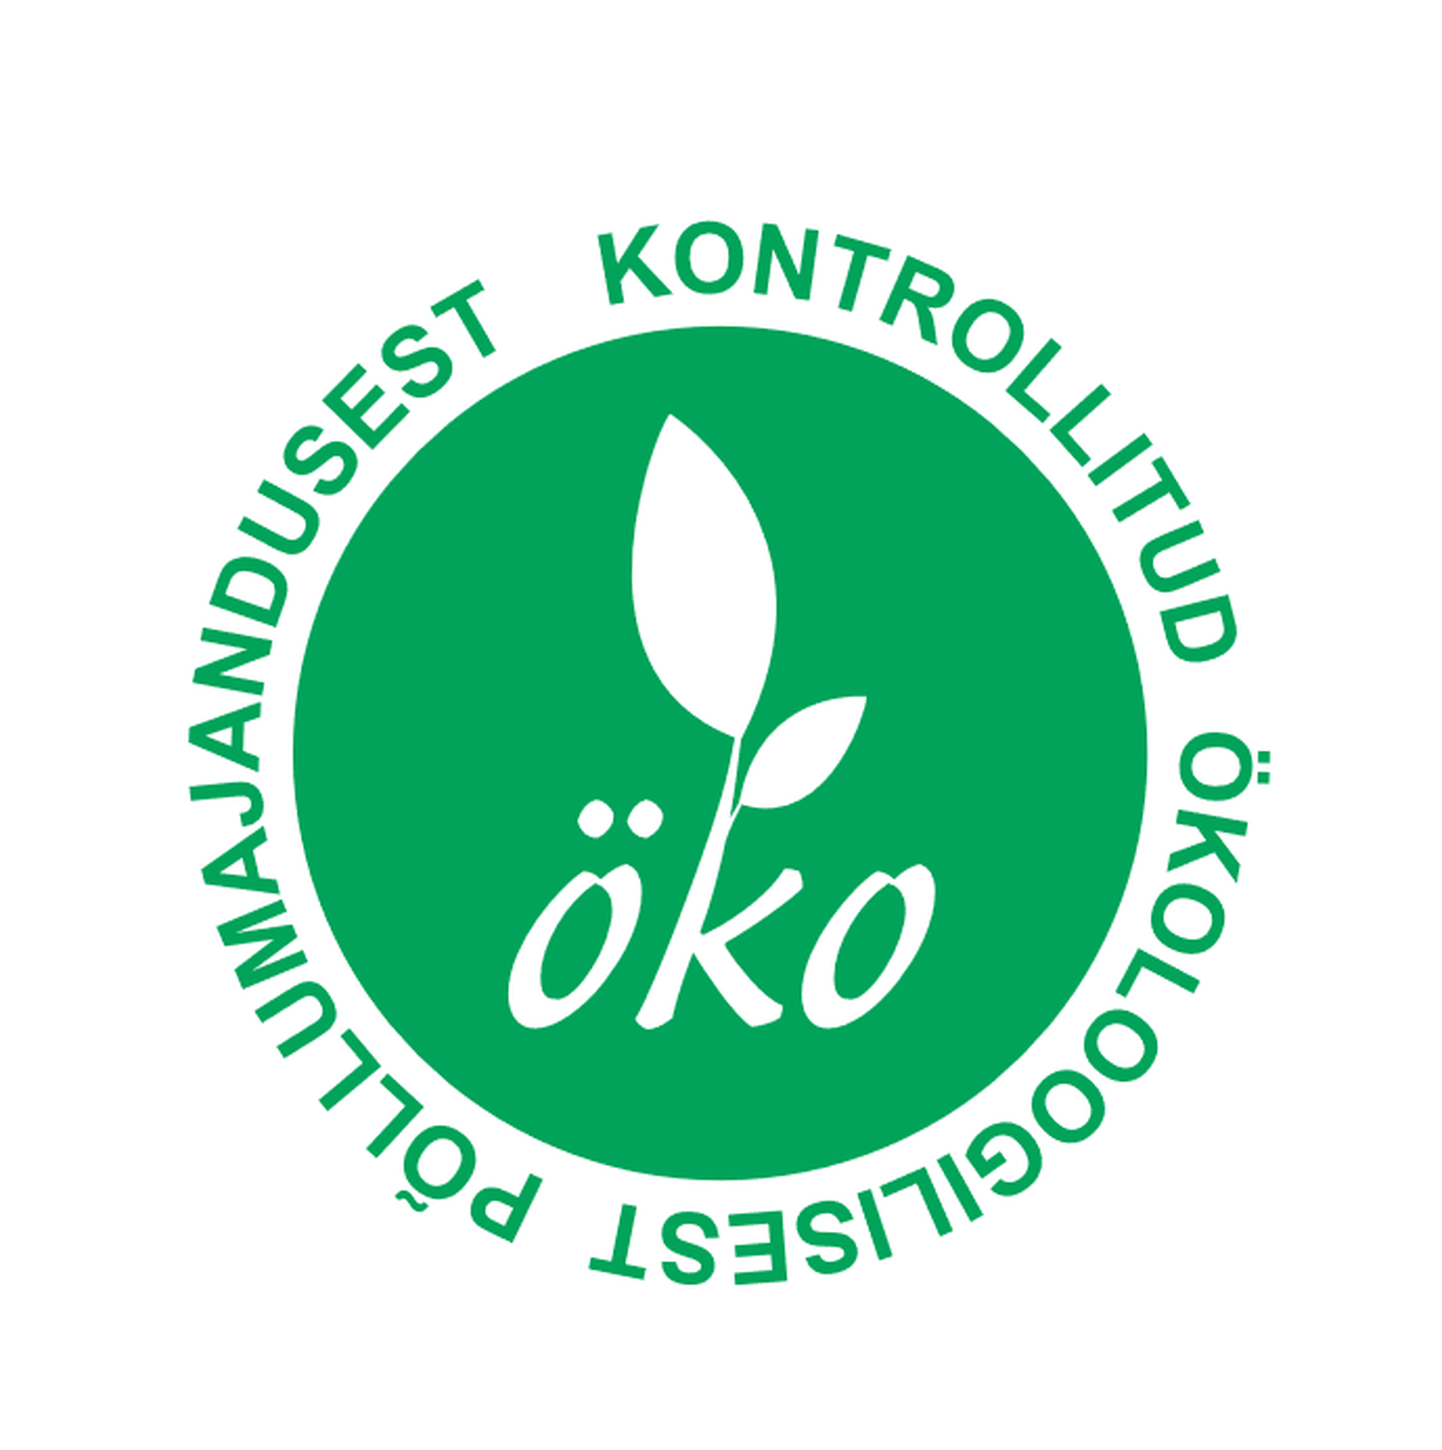 Eesti ökomärk näitab, et toode on mahepõllumajanduslikult toodetud ja töödeldud. Toote saamisel ei ole kasutatud mineraalväetisi, taimekaitsevahendeid, säilitusaineid ega toiduvärve.